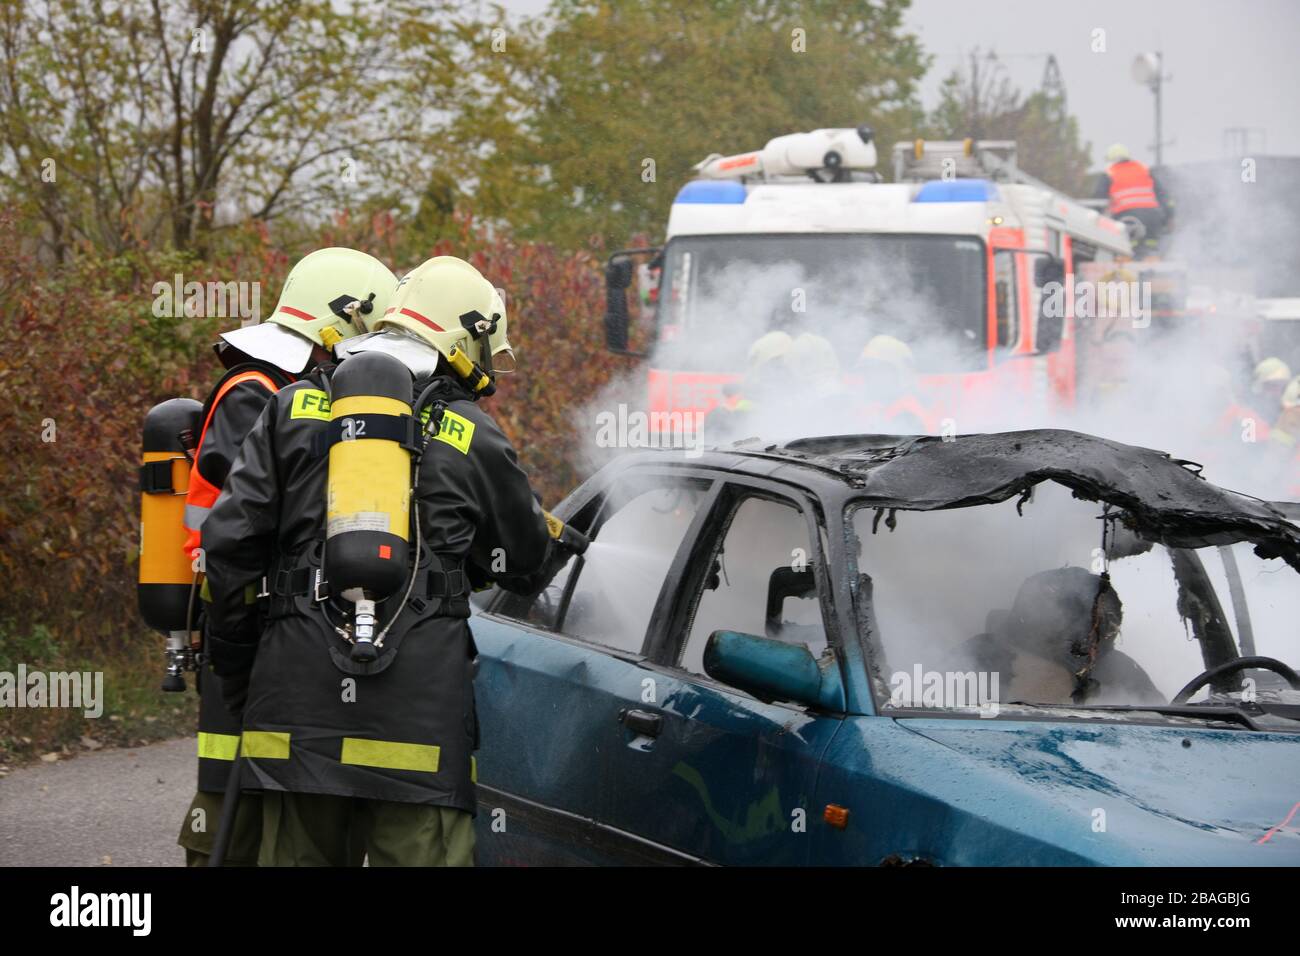 Feuerwehr loescht ein brennendes Auto, Verkehrsunfall, Stock Photo